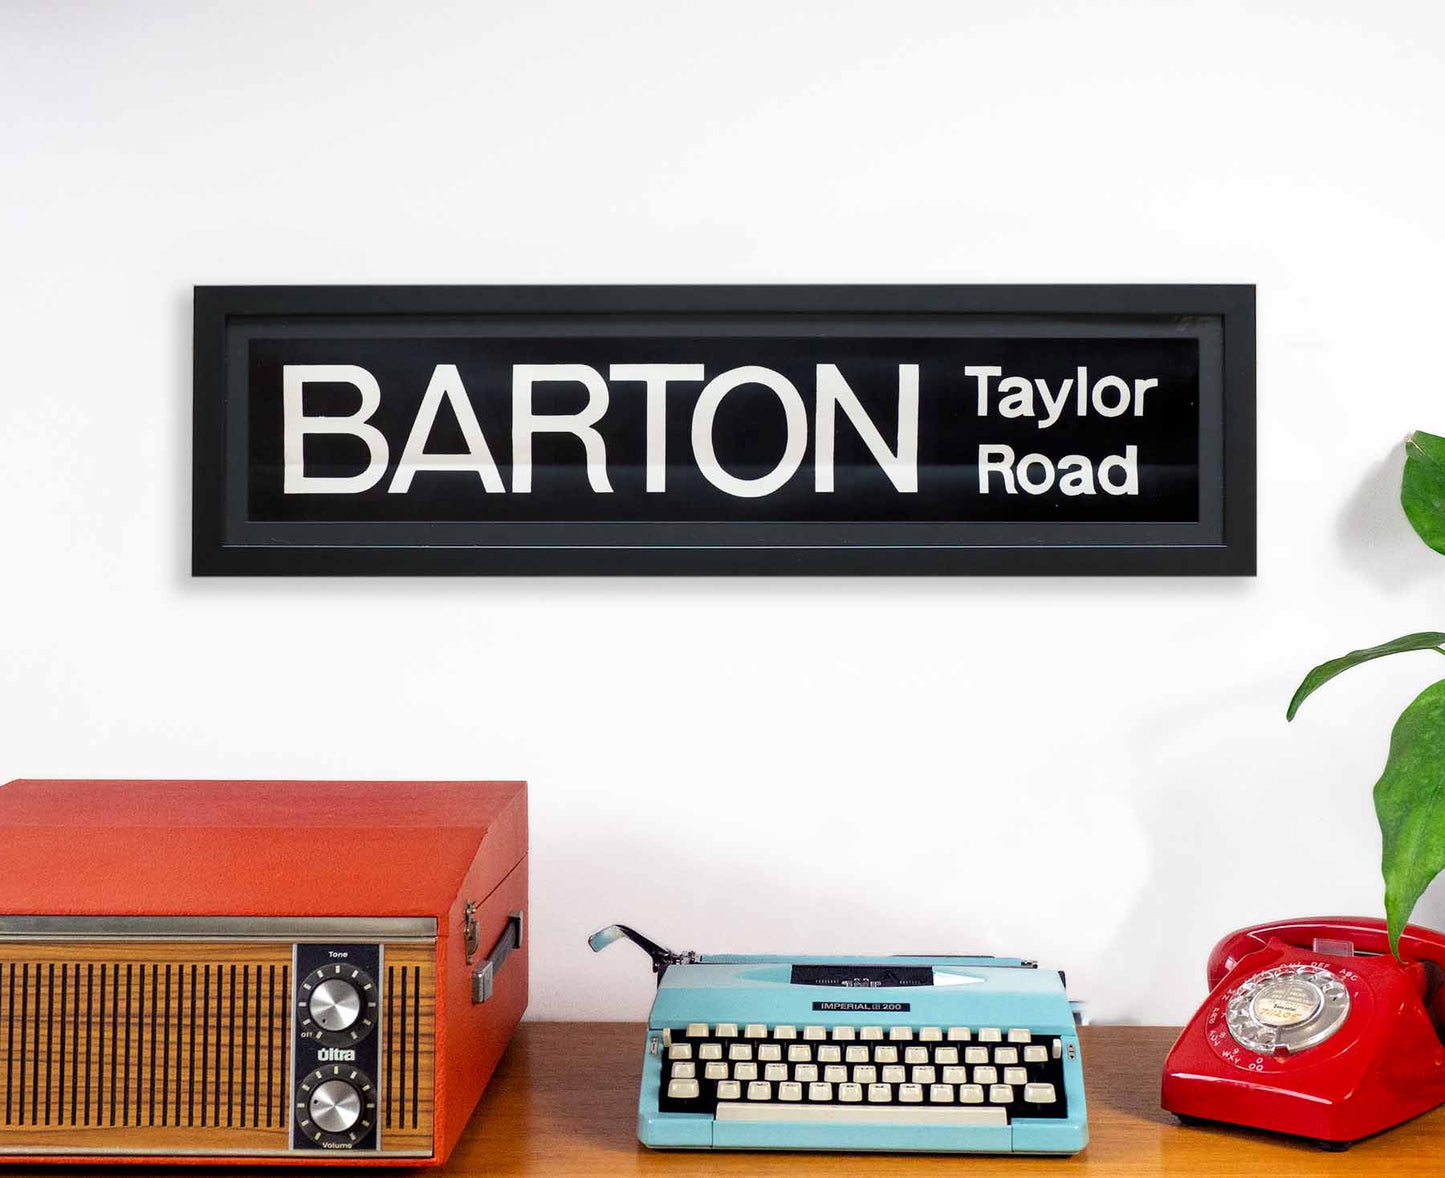 Barton Taylor Road 1970s Framed Bus Blind